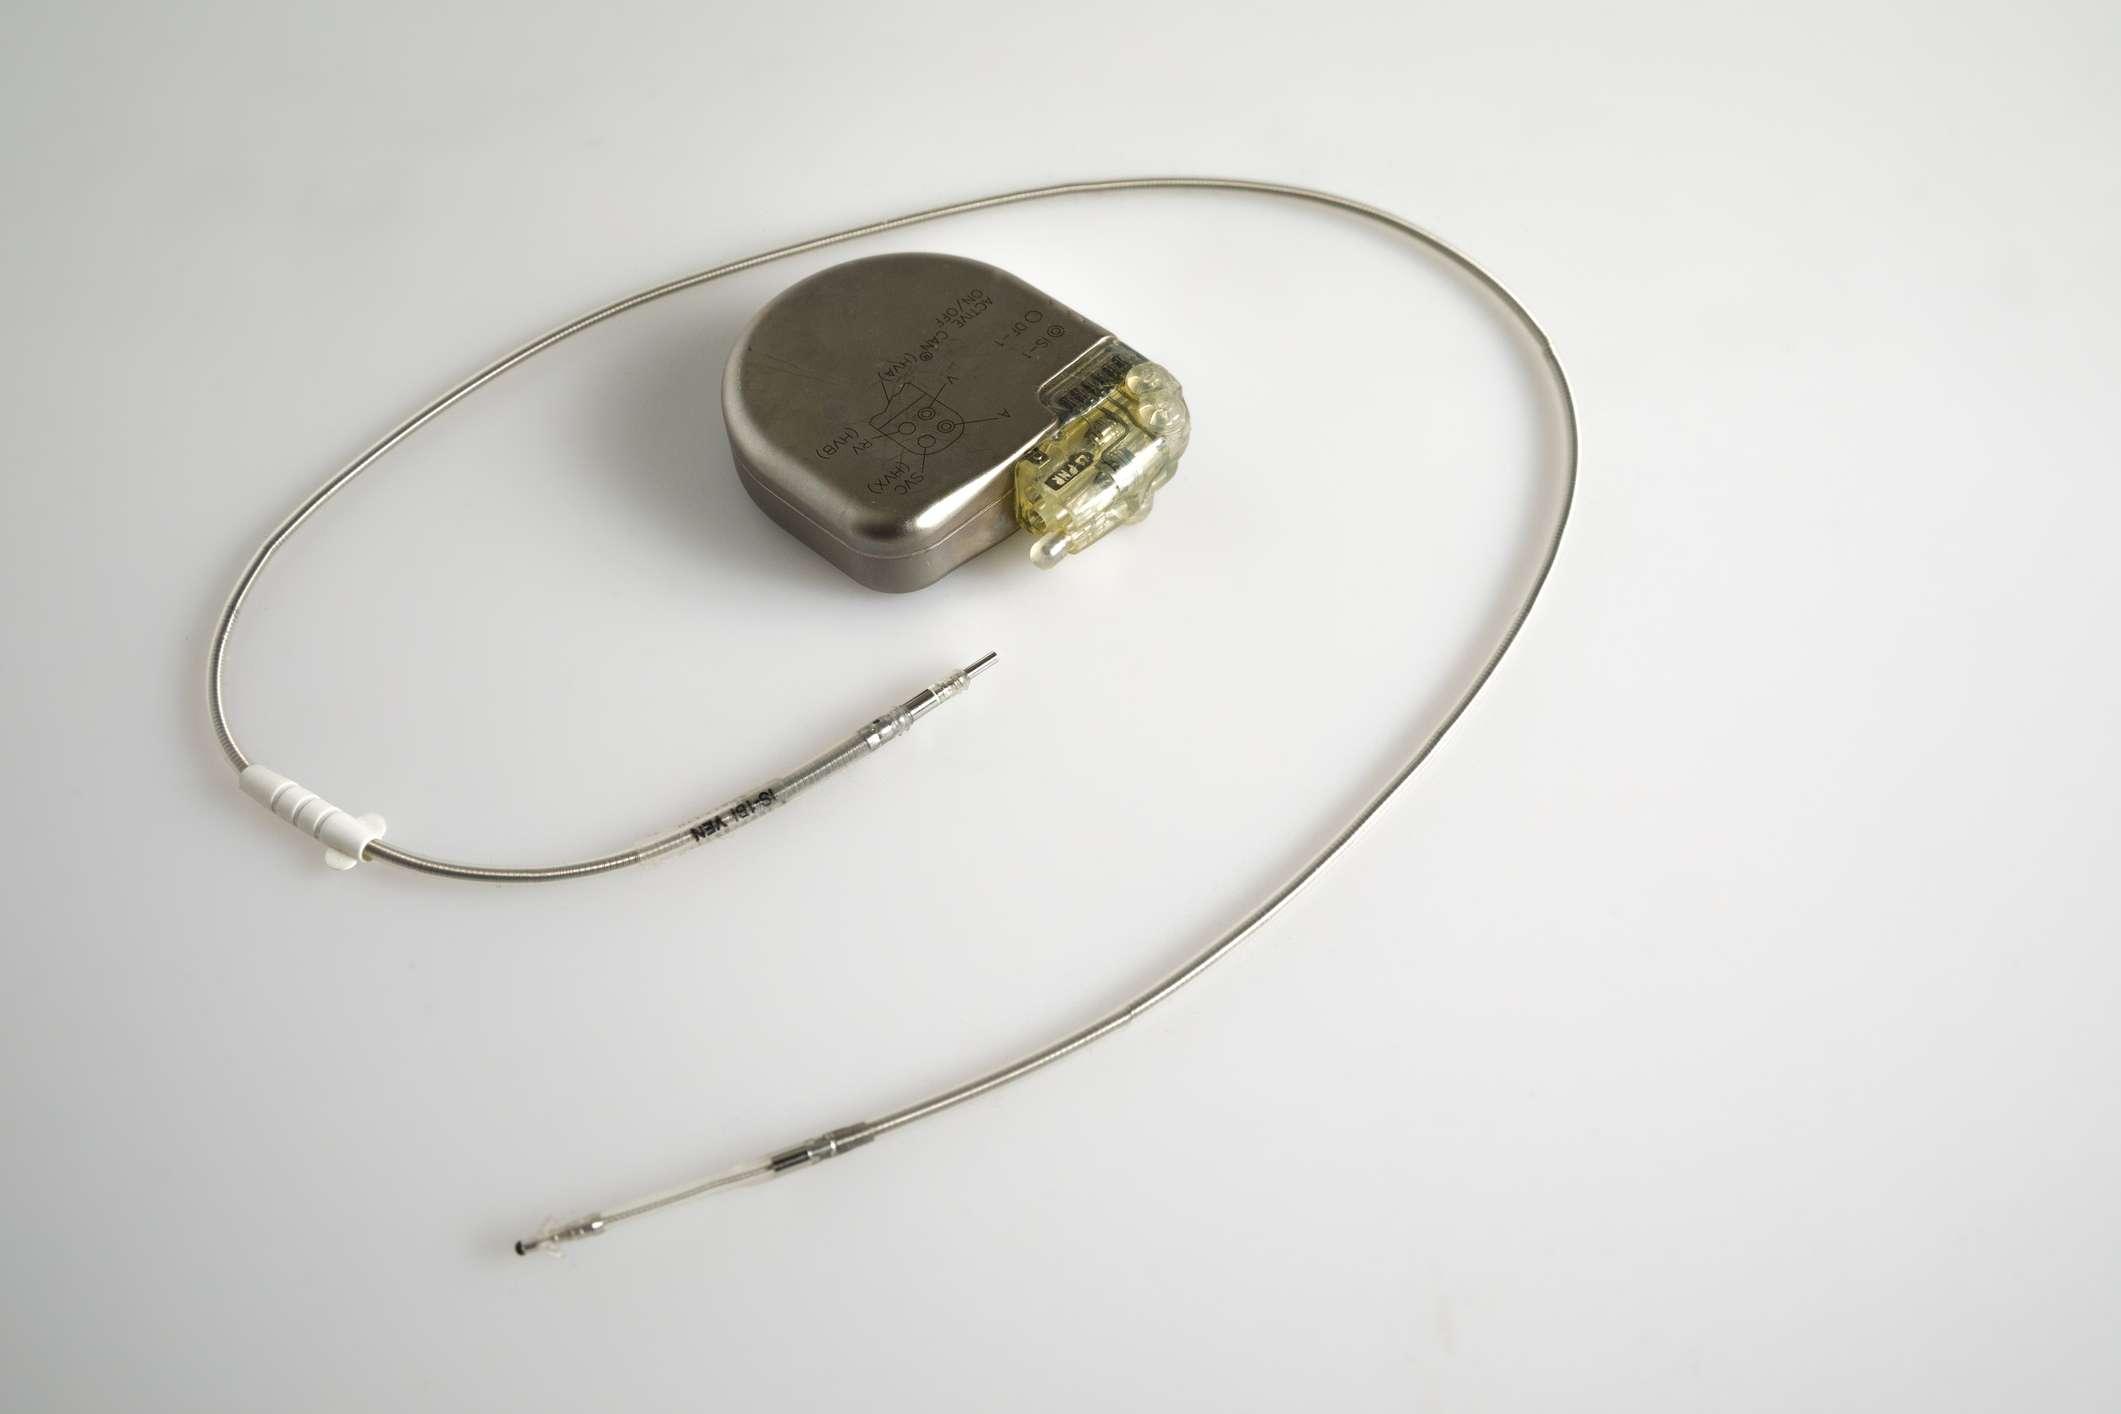 Ein implantierbarer Kardioverter-Defibrillator oder ein ICD-Schrittmacher mit Elektroden. Dieser wird in der Brust platziert, um einen plötzlichen Tod zu verhindern, wenn Patienten eine ventrikuläre Tachykardie oder Kammerflimmern erlitten haben